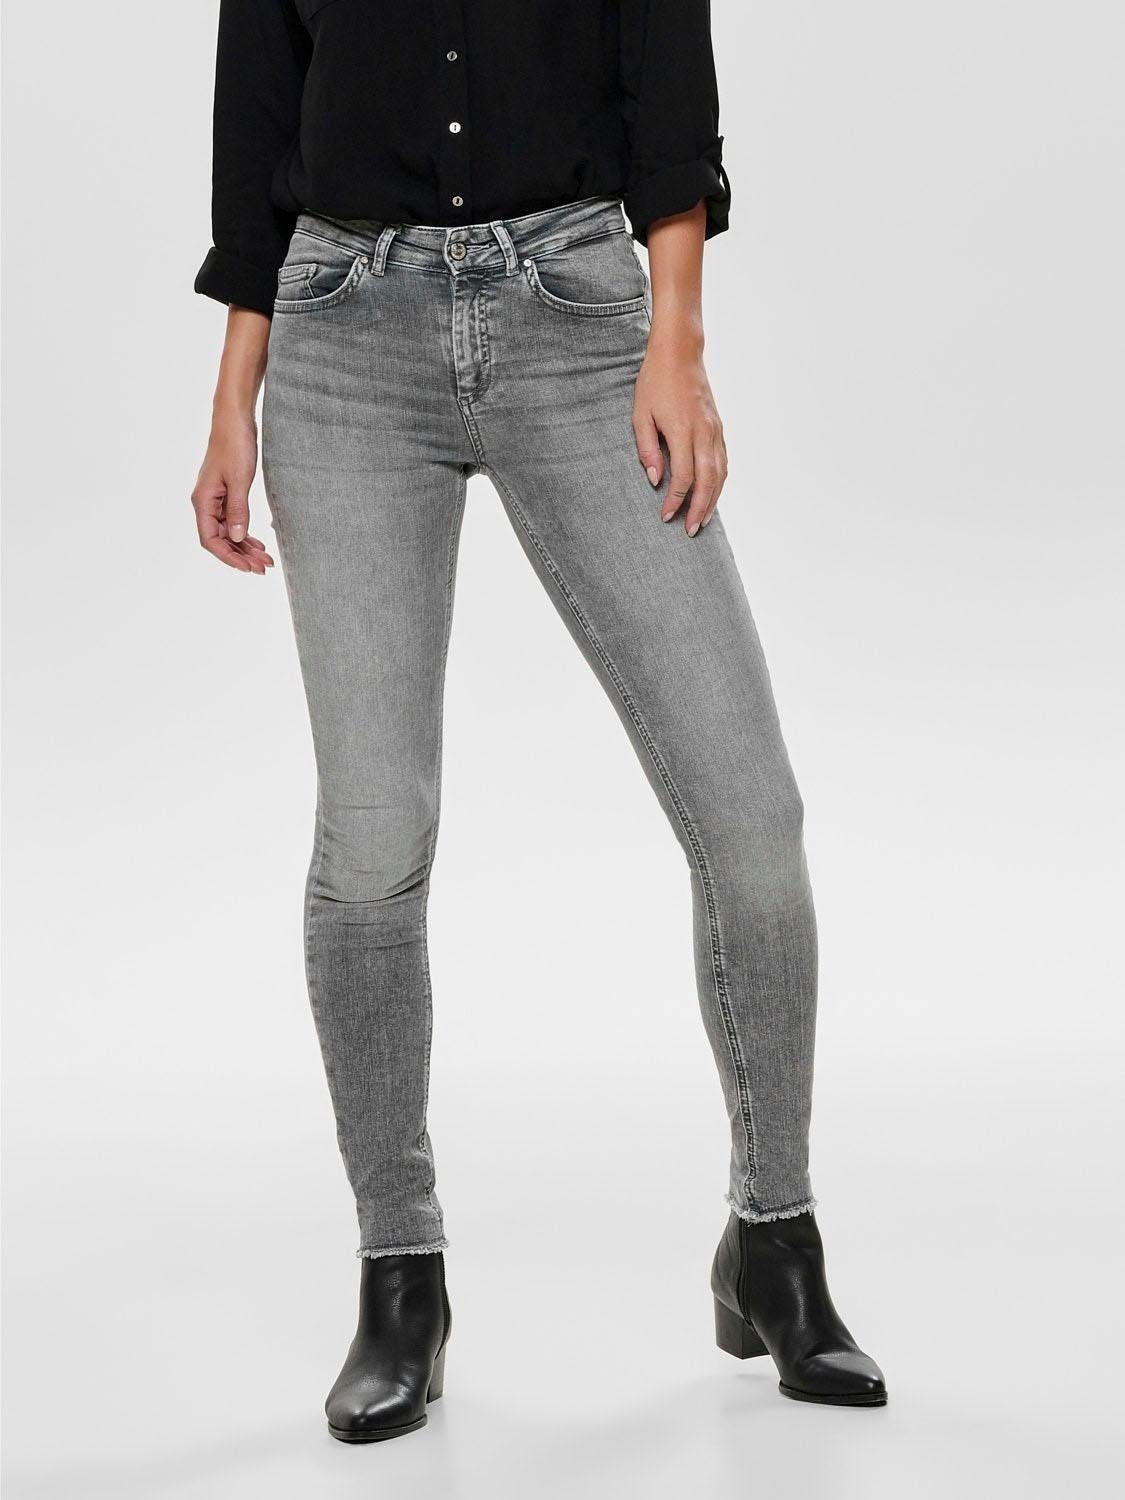 Graue Jeans mit niedrigem Bund für Damen online kaufen | OTTO